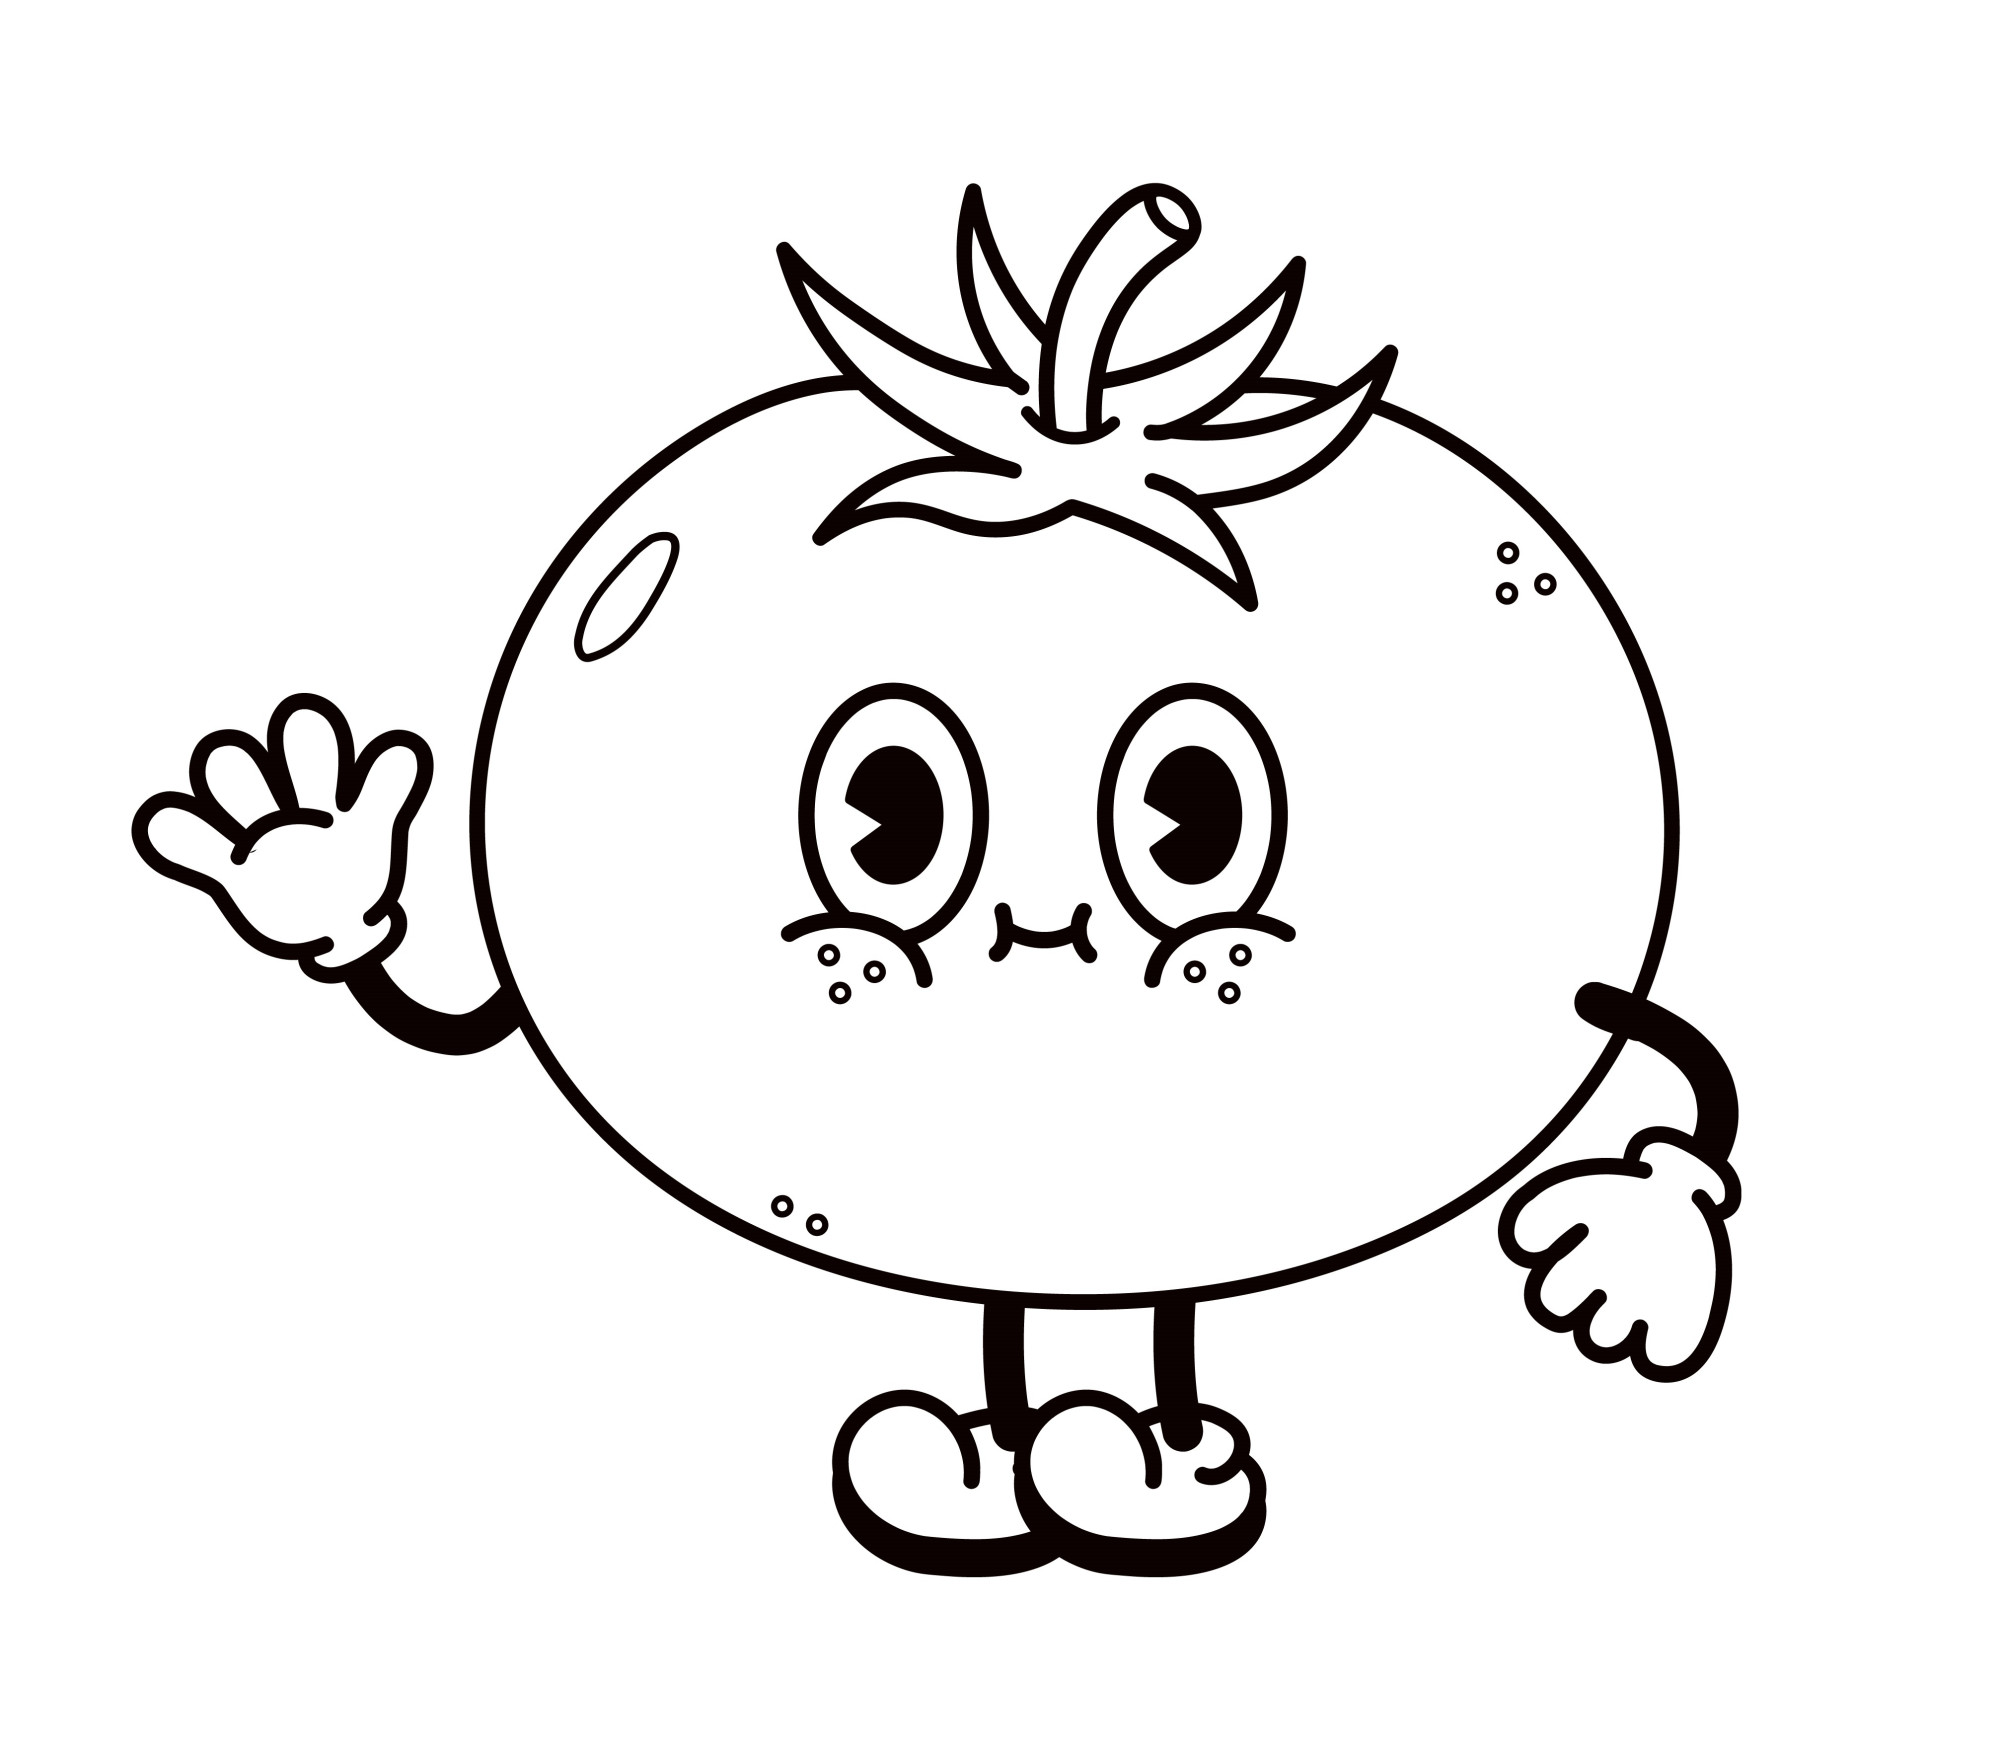 Раскраска для детей: мультяшный сеньор помидор с глазами машет рукой